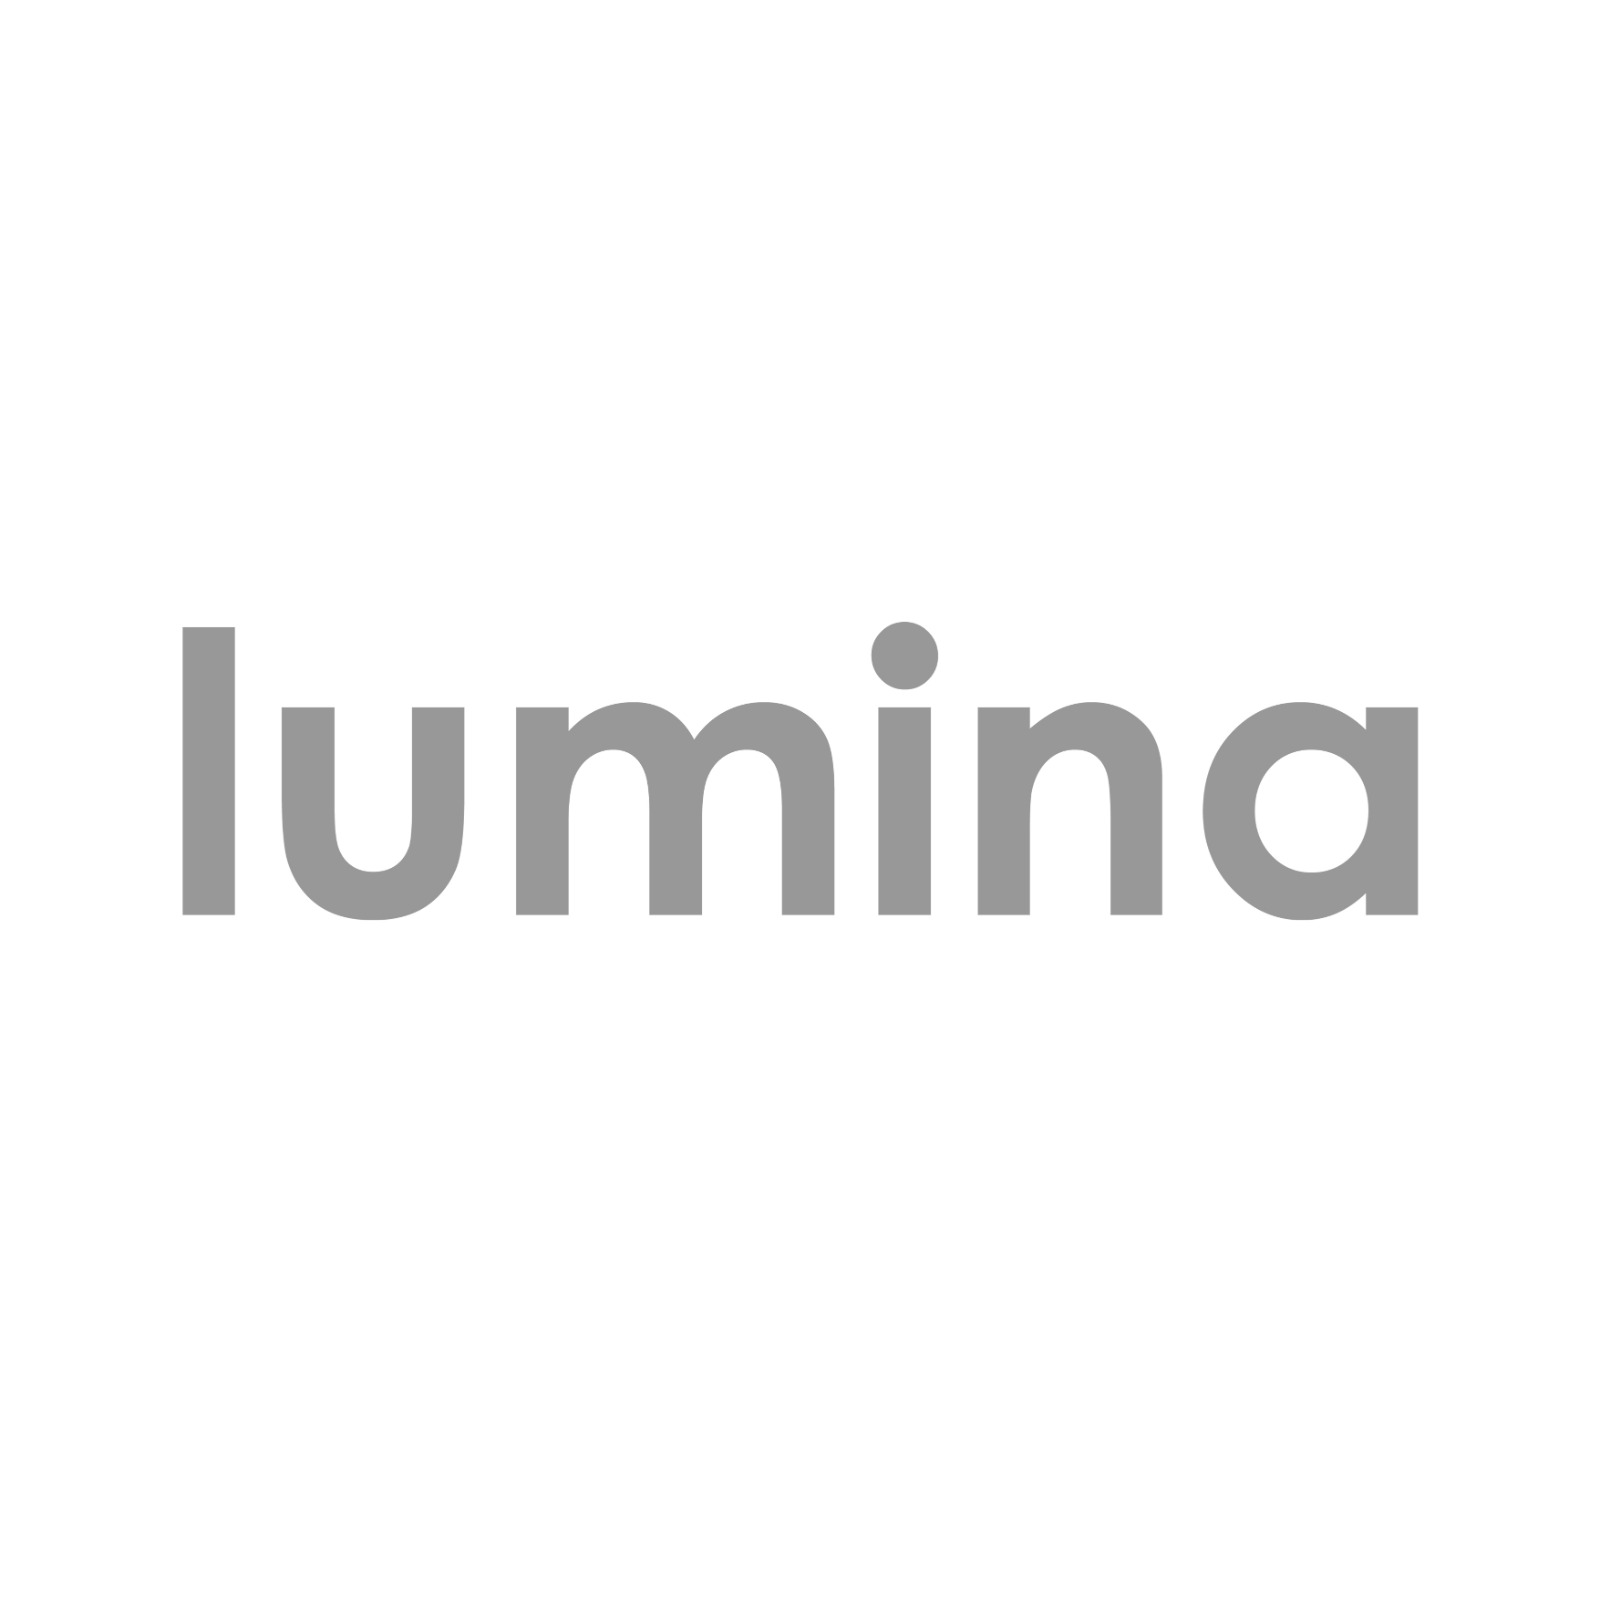 Lumina Live! Pte. Ltd. company logo